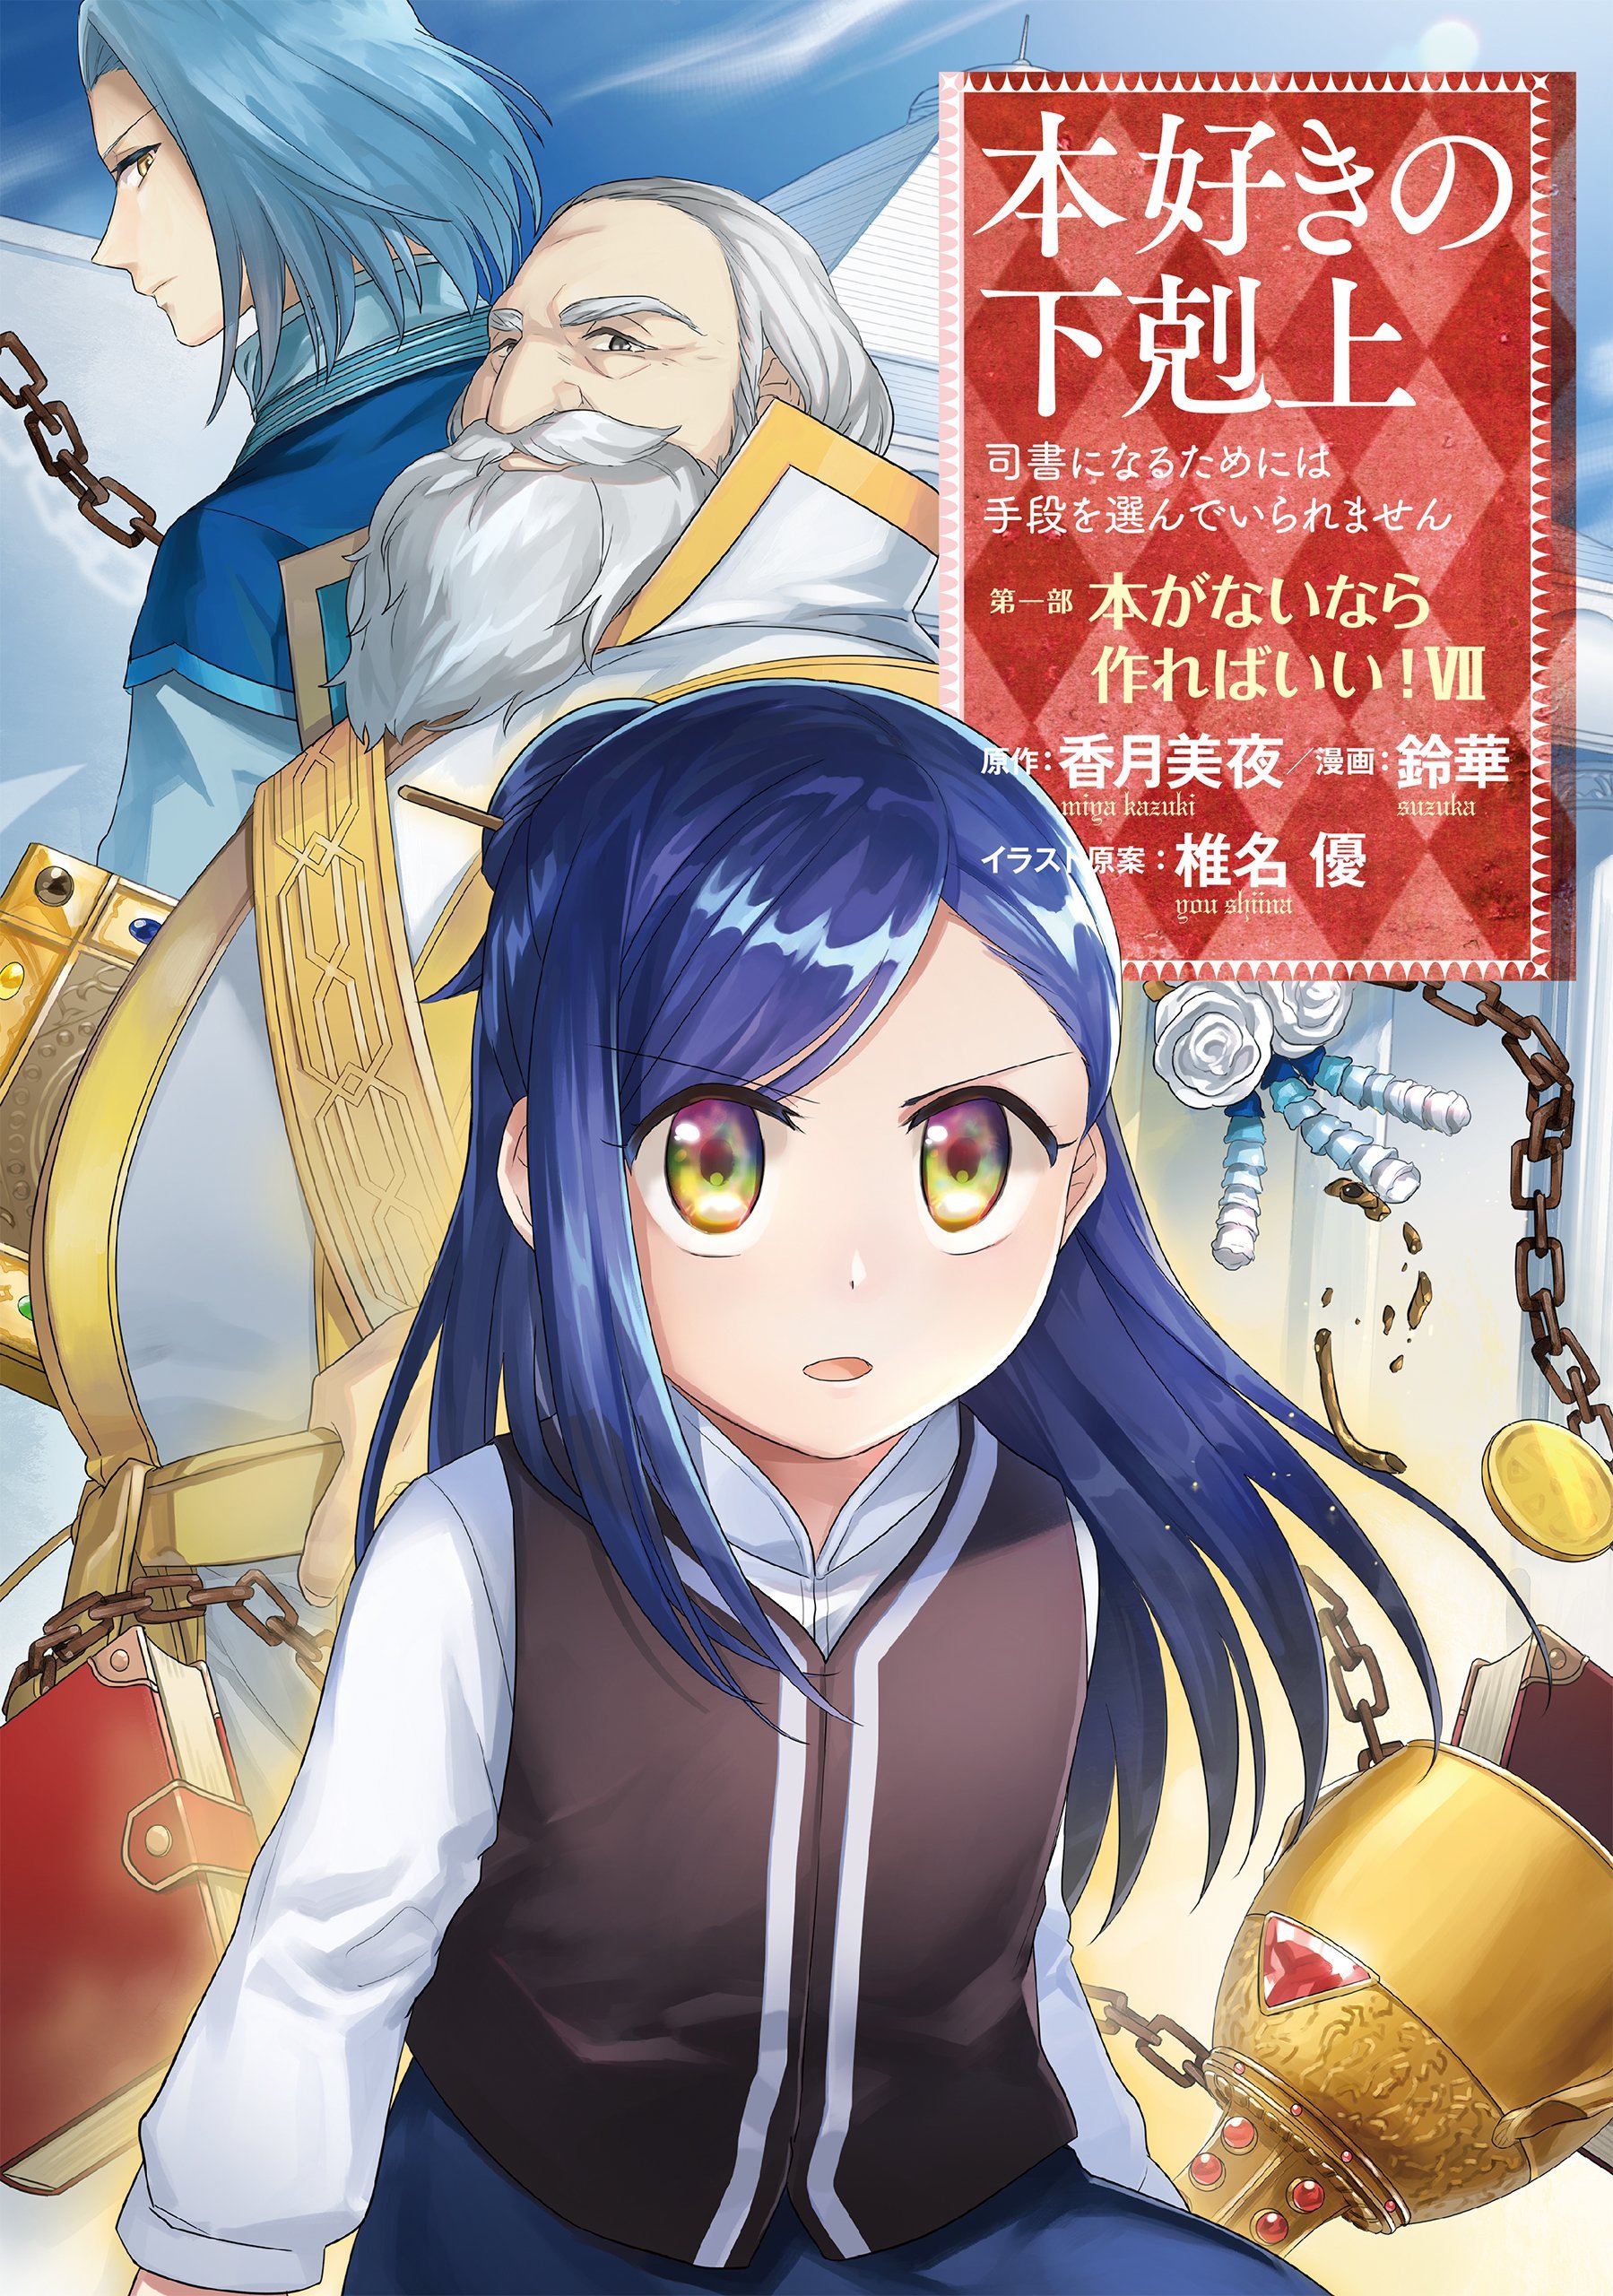 Katsuki Miya - Shiina Yuu - Honzuki no Gekokujou: Shisho ni Naru Tame ni wa  Shudan wo Erandeiraremasen - Light Novel - TO Books Lanove - 7 - Dainibu  `Shinden no Miko Minarai 4' (TO Books)